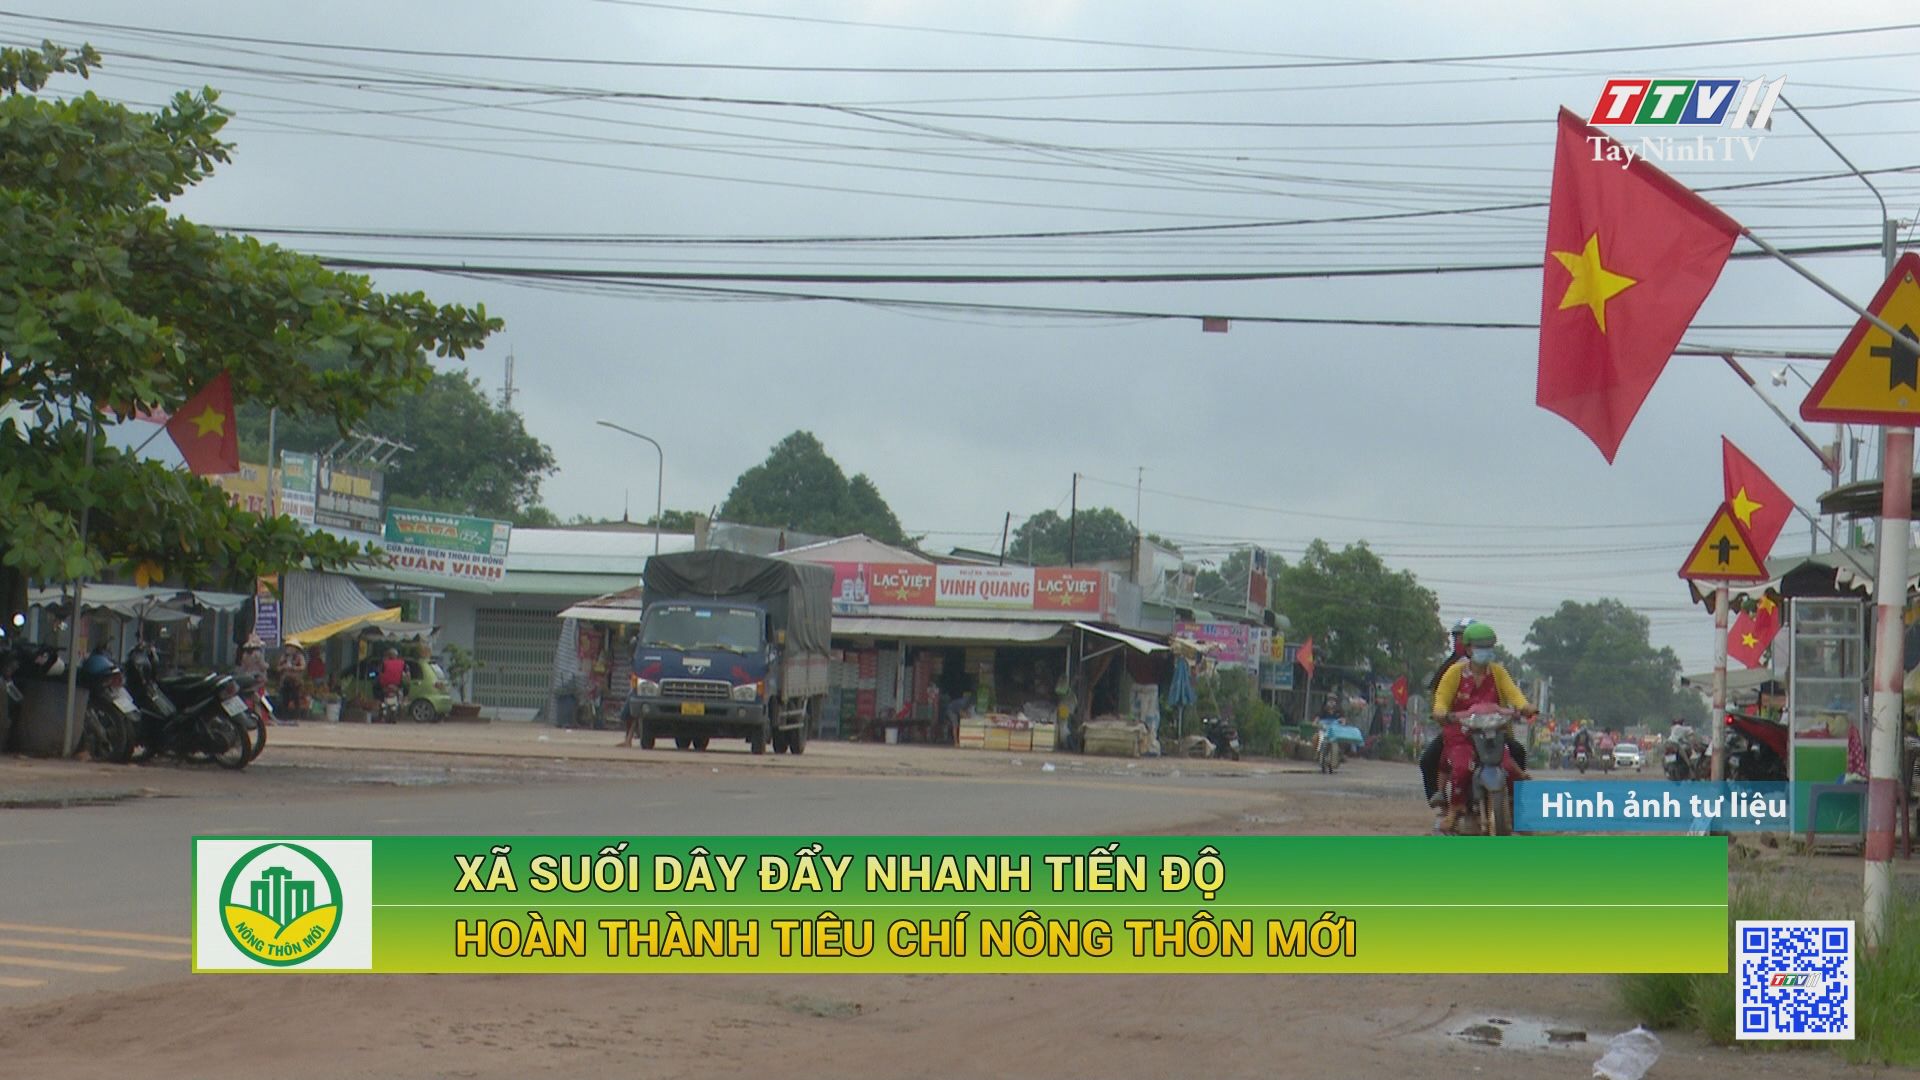 Xã Suối Dây đẩy nhanh tiến độ hoàn thành tiêu chí nông thôn nới | TÂY NINH XÂY DỰNG NÔNG THÔN MỚI | TayNinhTV